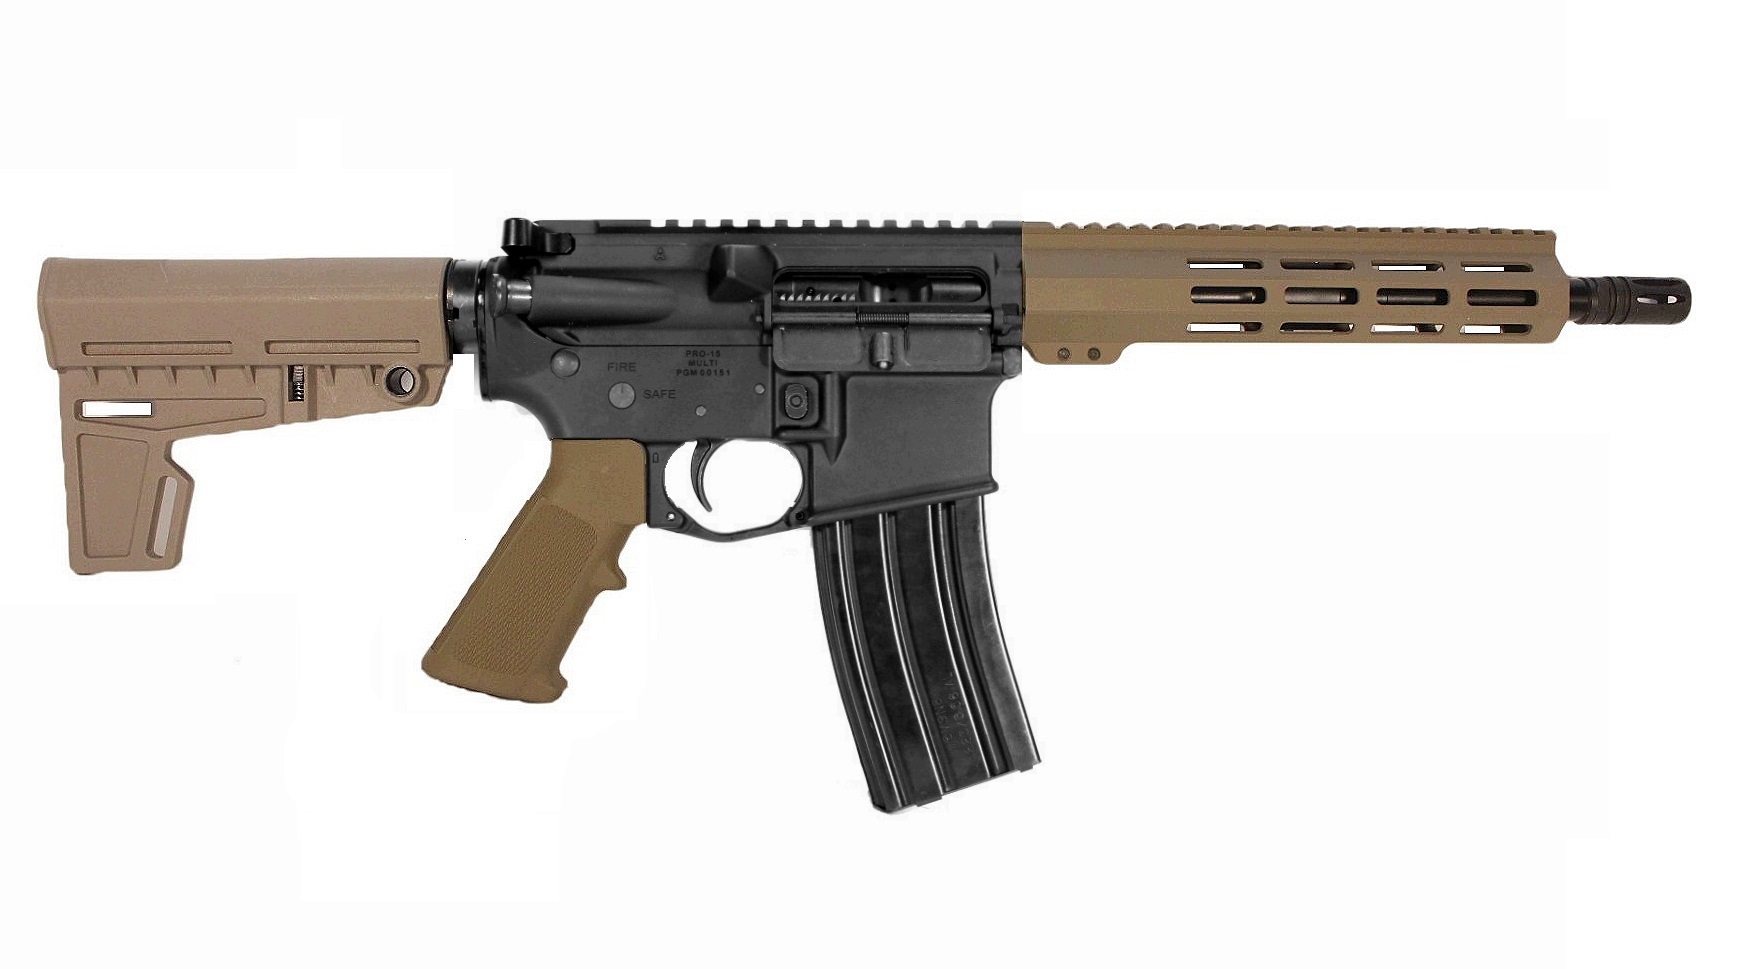 10.5 inch 458 Socom AR Pistol in BLK/FDE